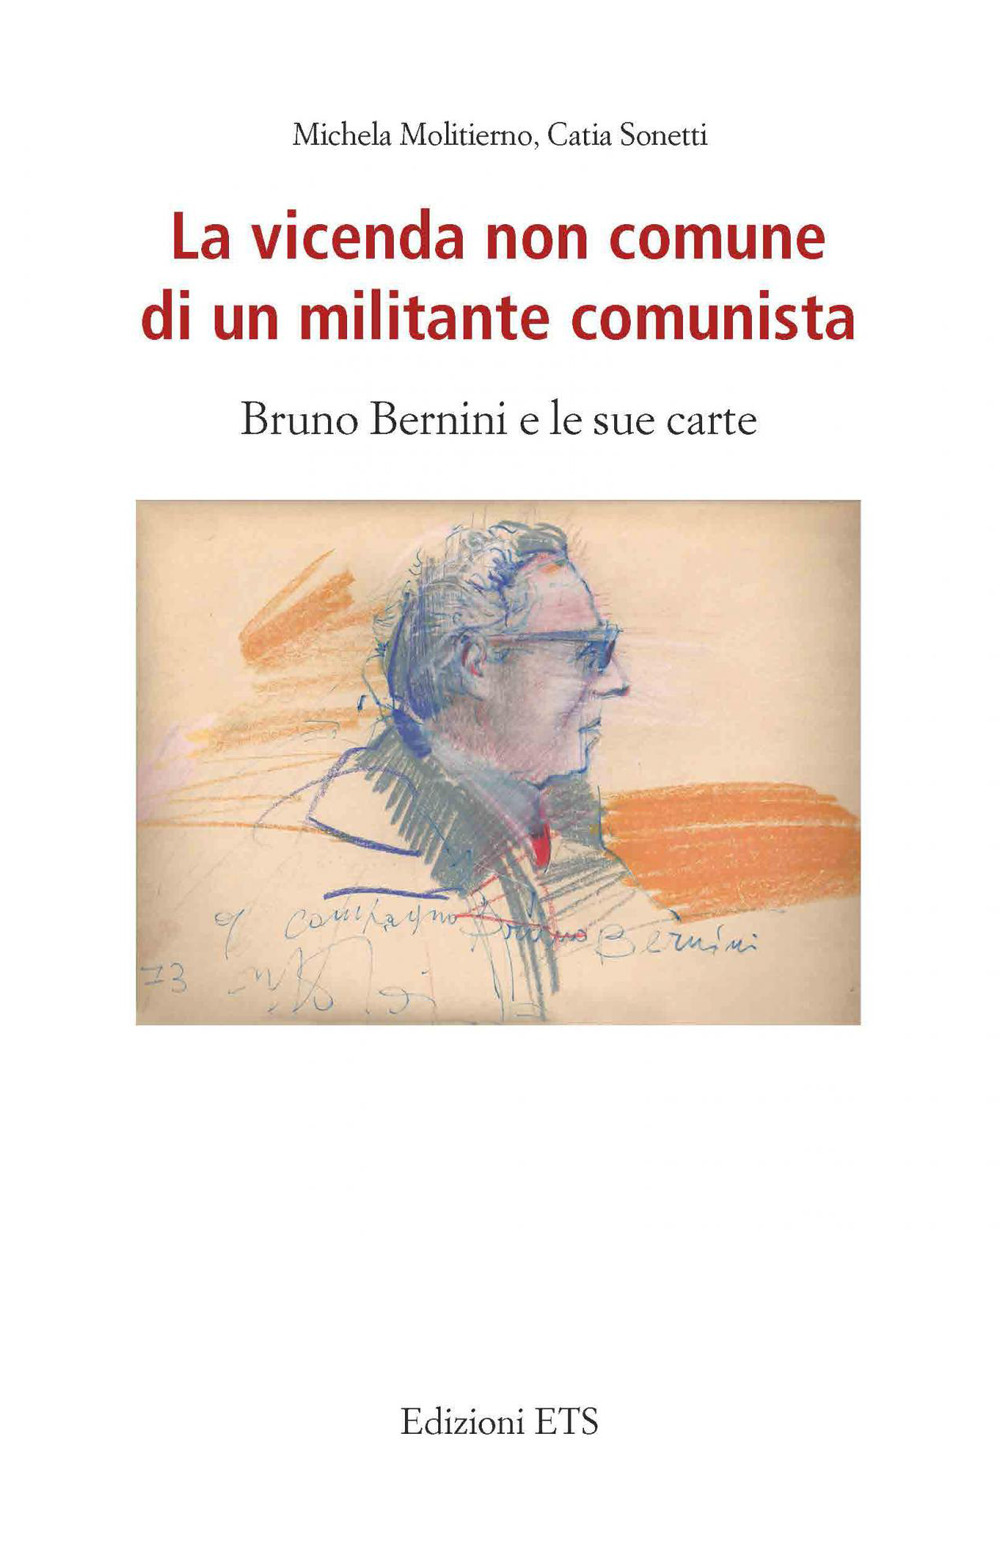 La vicenda non comune di un militante comunista. Bruno Bernini e le sue carte